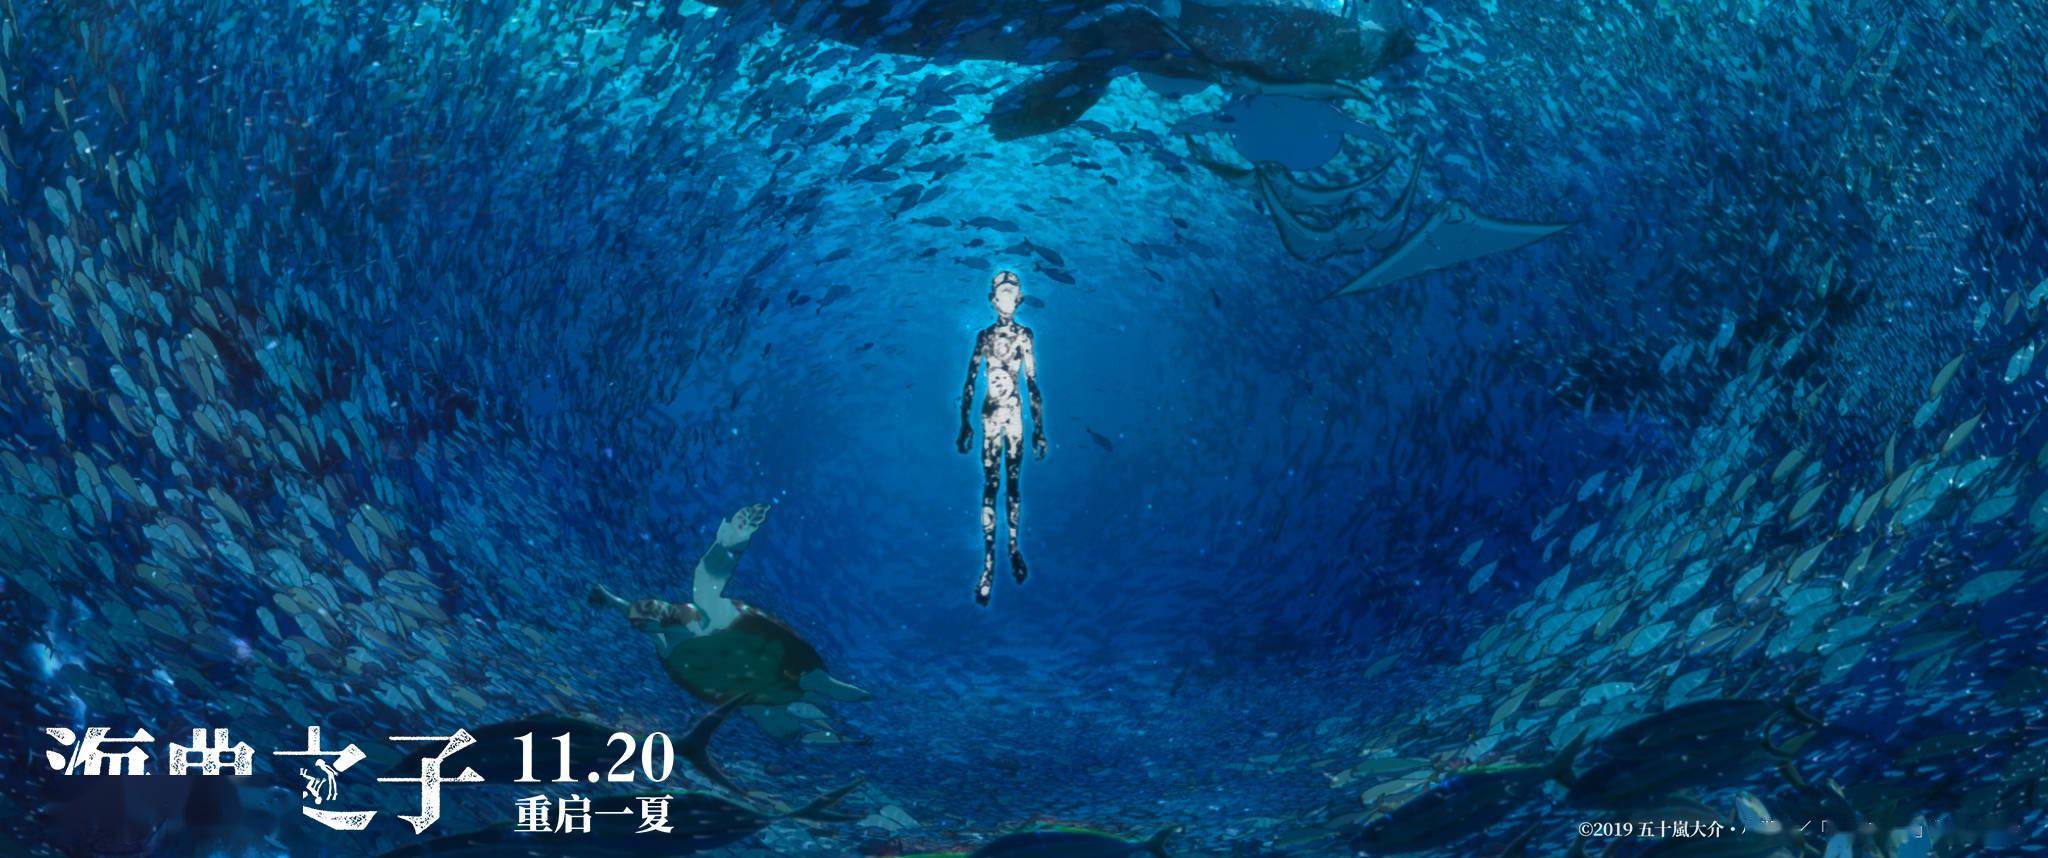 电影《海兽之子》预售开启 一张电影票带你梦回夏日的阳光和海洋